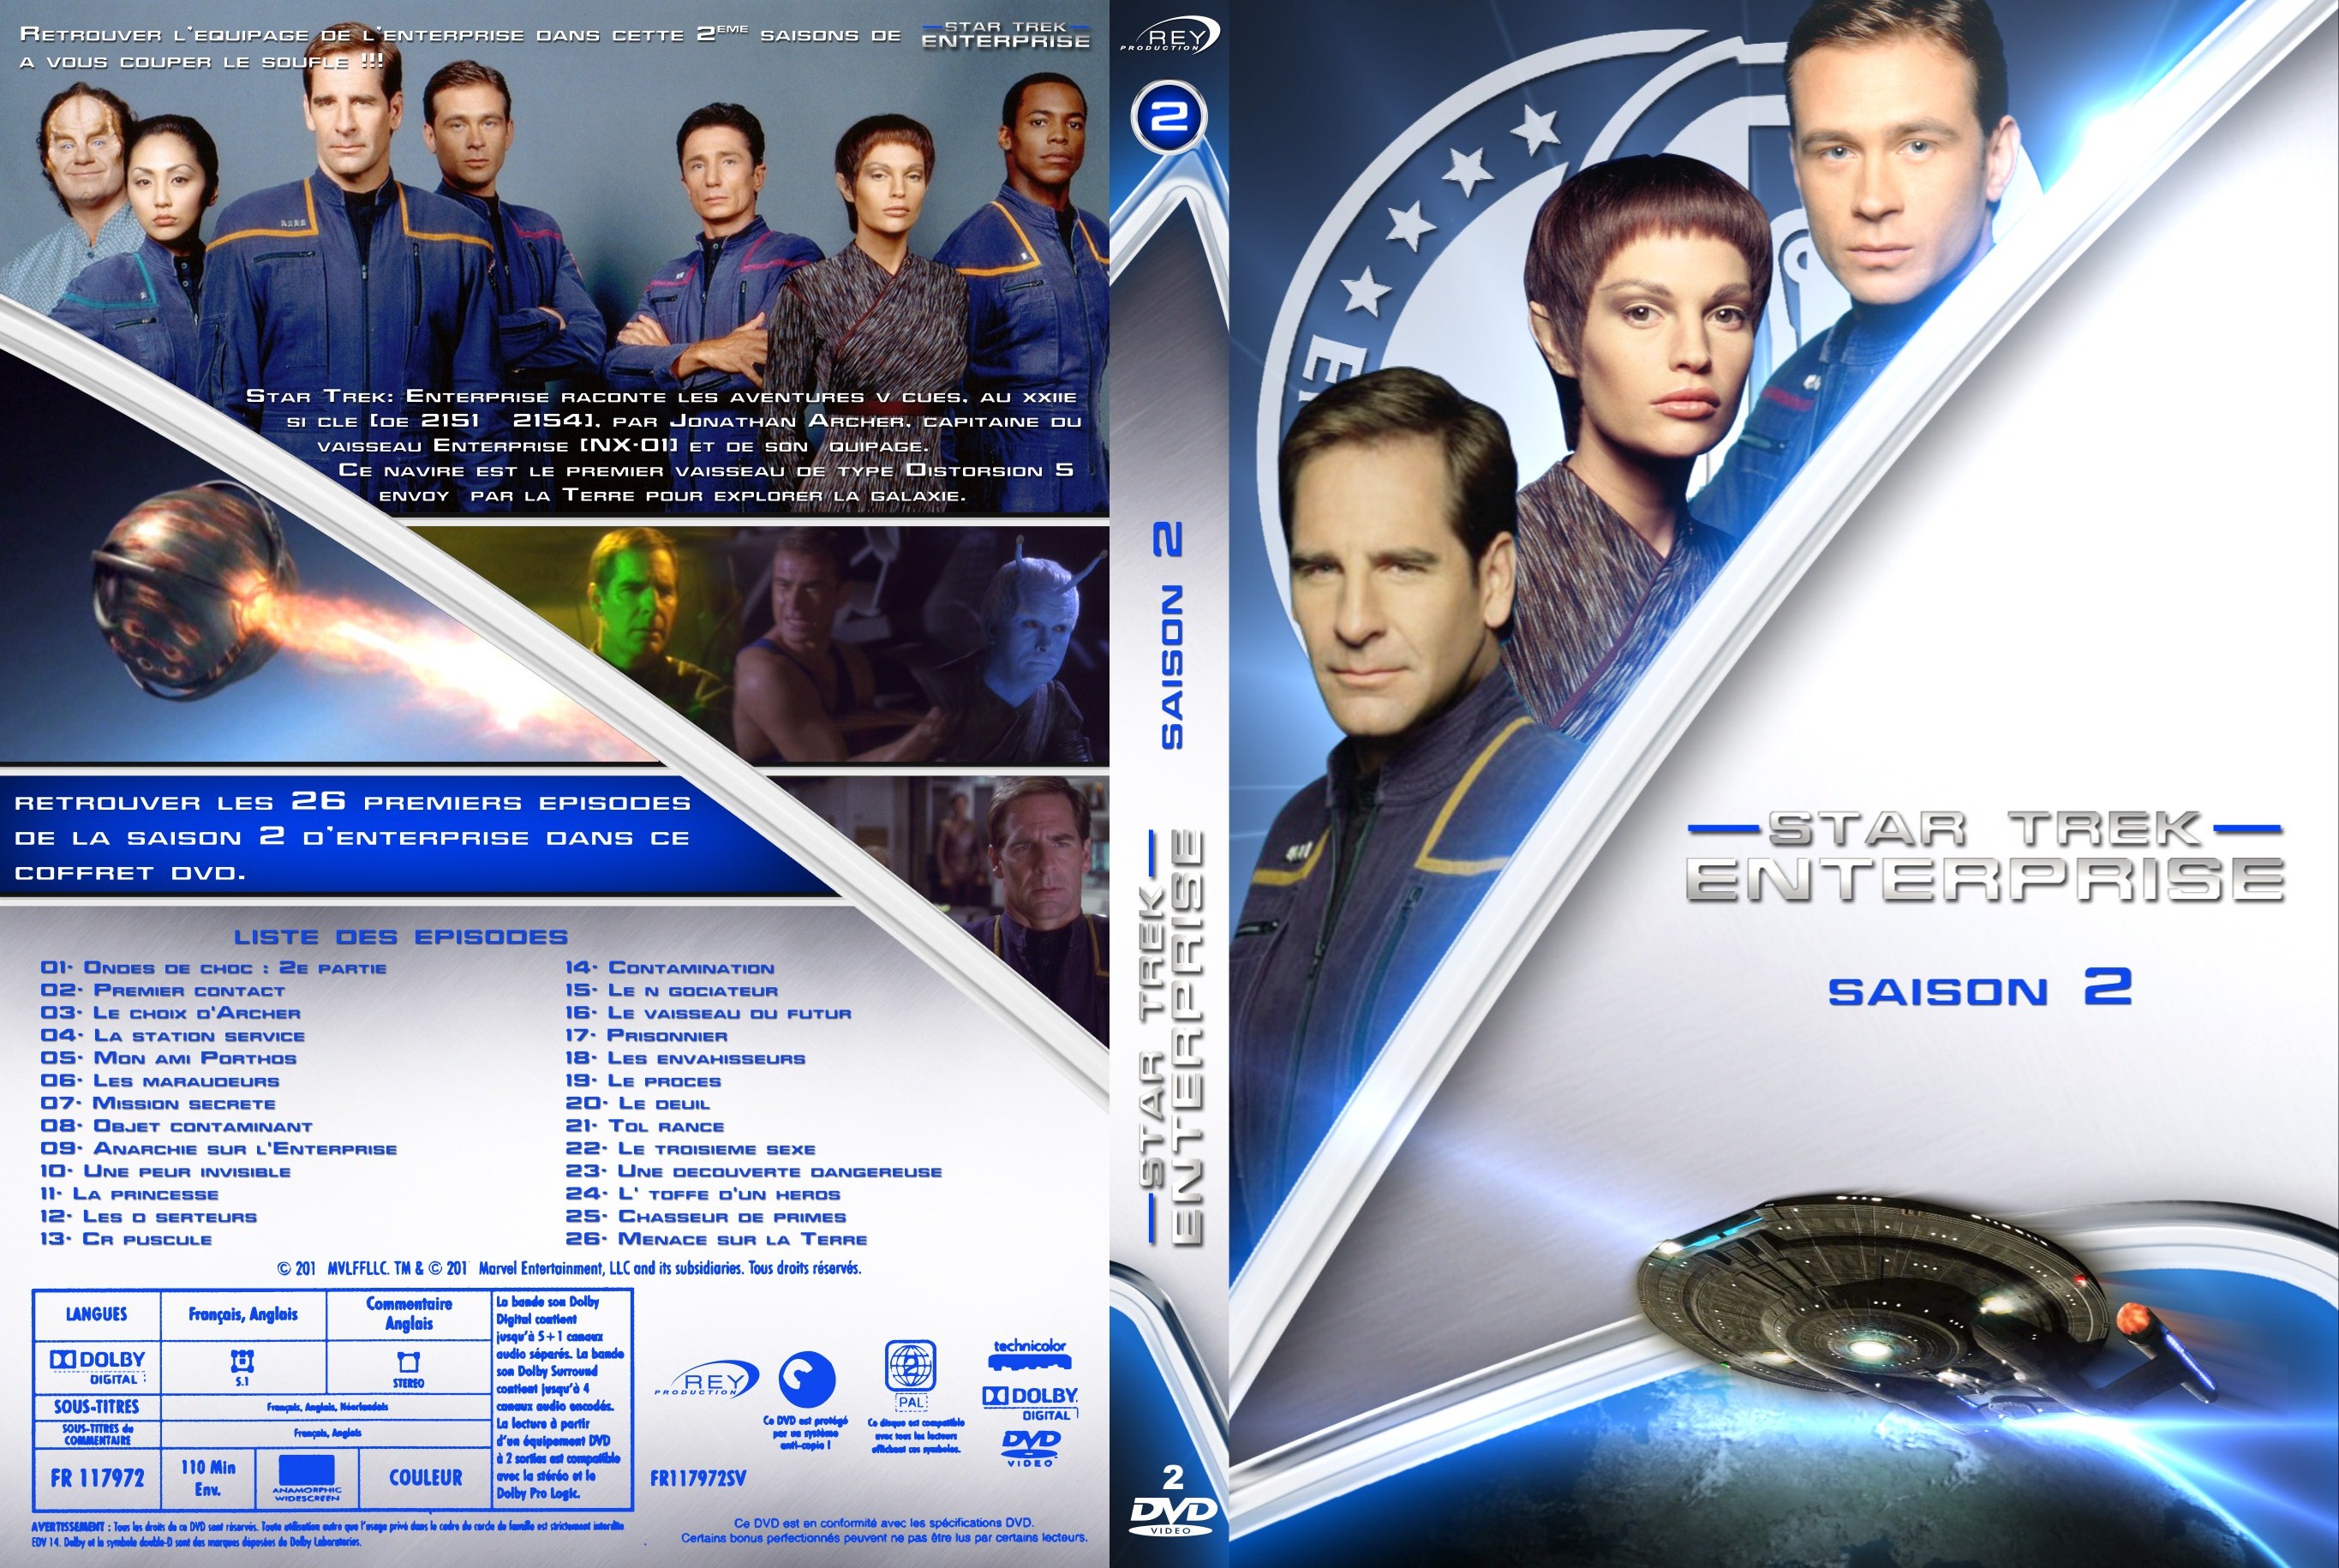 Jaquette DVD Star Trek Enterprise saison 2 custom